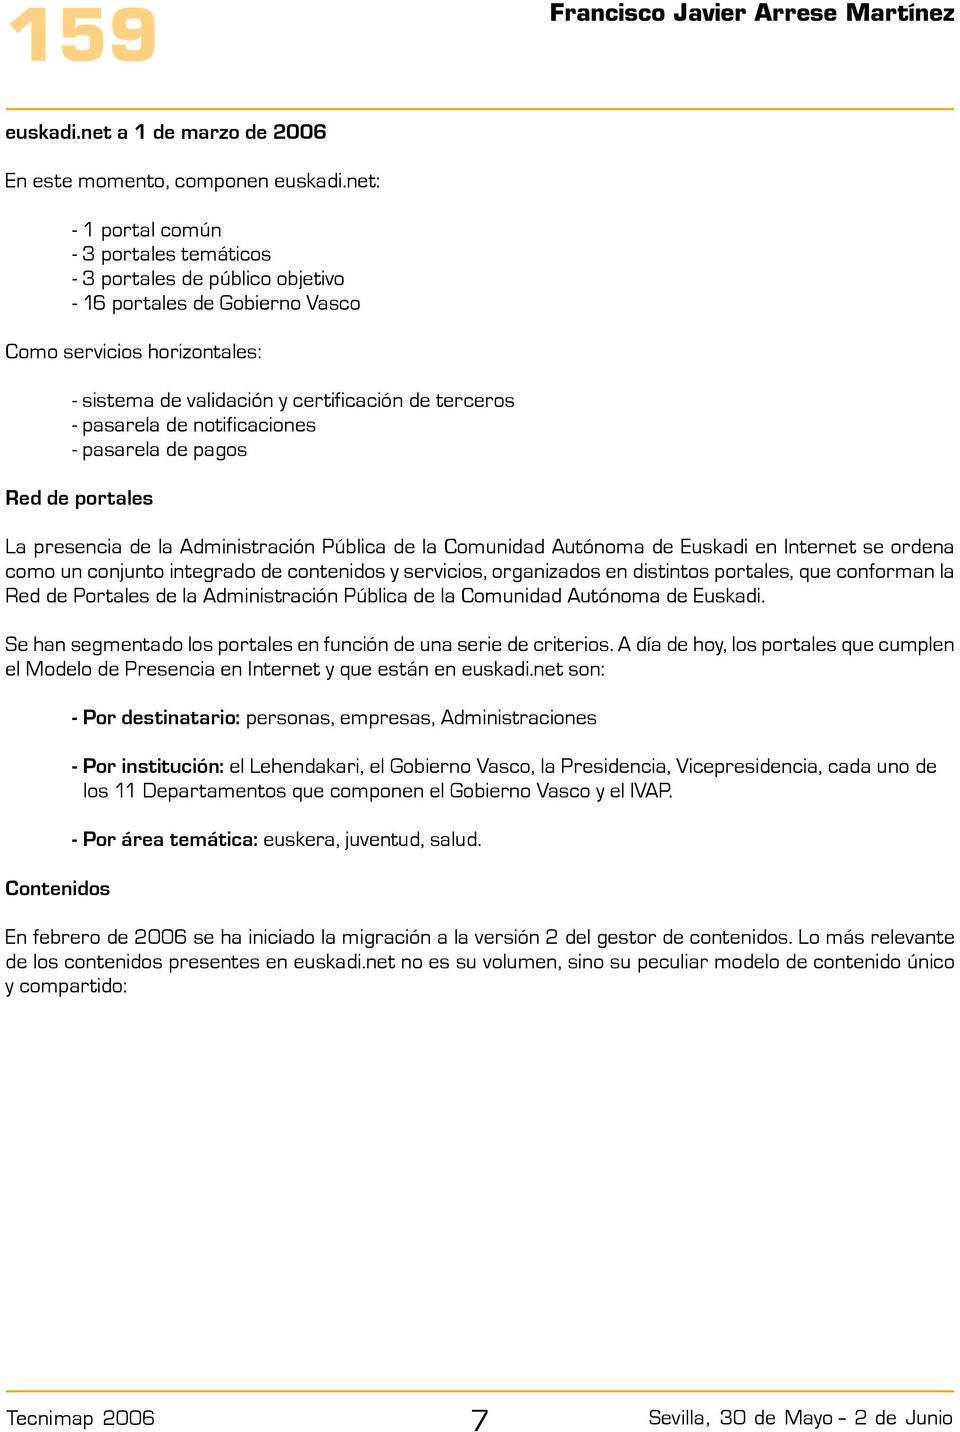 pasarela de notificaciones - pasarela de pagos Red de portales La presencia de la Administración Pública de la Comunidad Autónoma de Euskadi en Internet se ordena como un conjunto integrado de